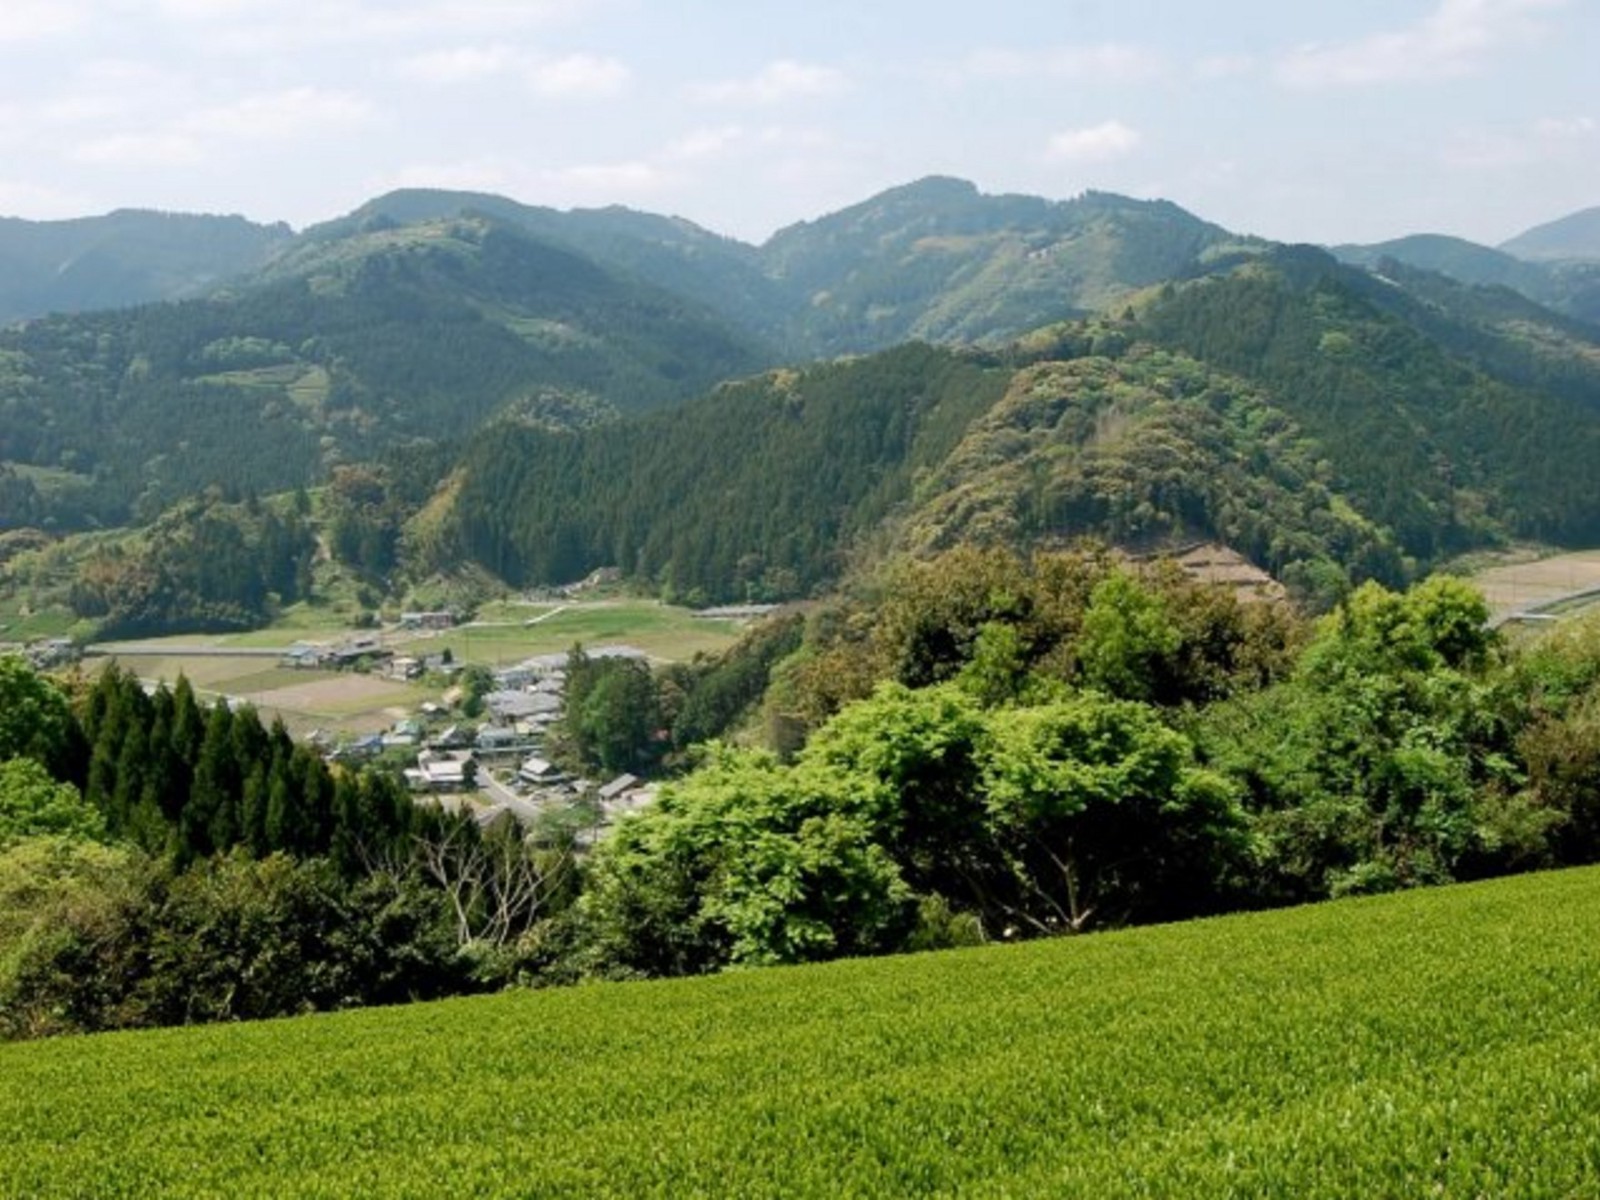 The green tea plantation in Shizuoka Prefecture